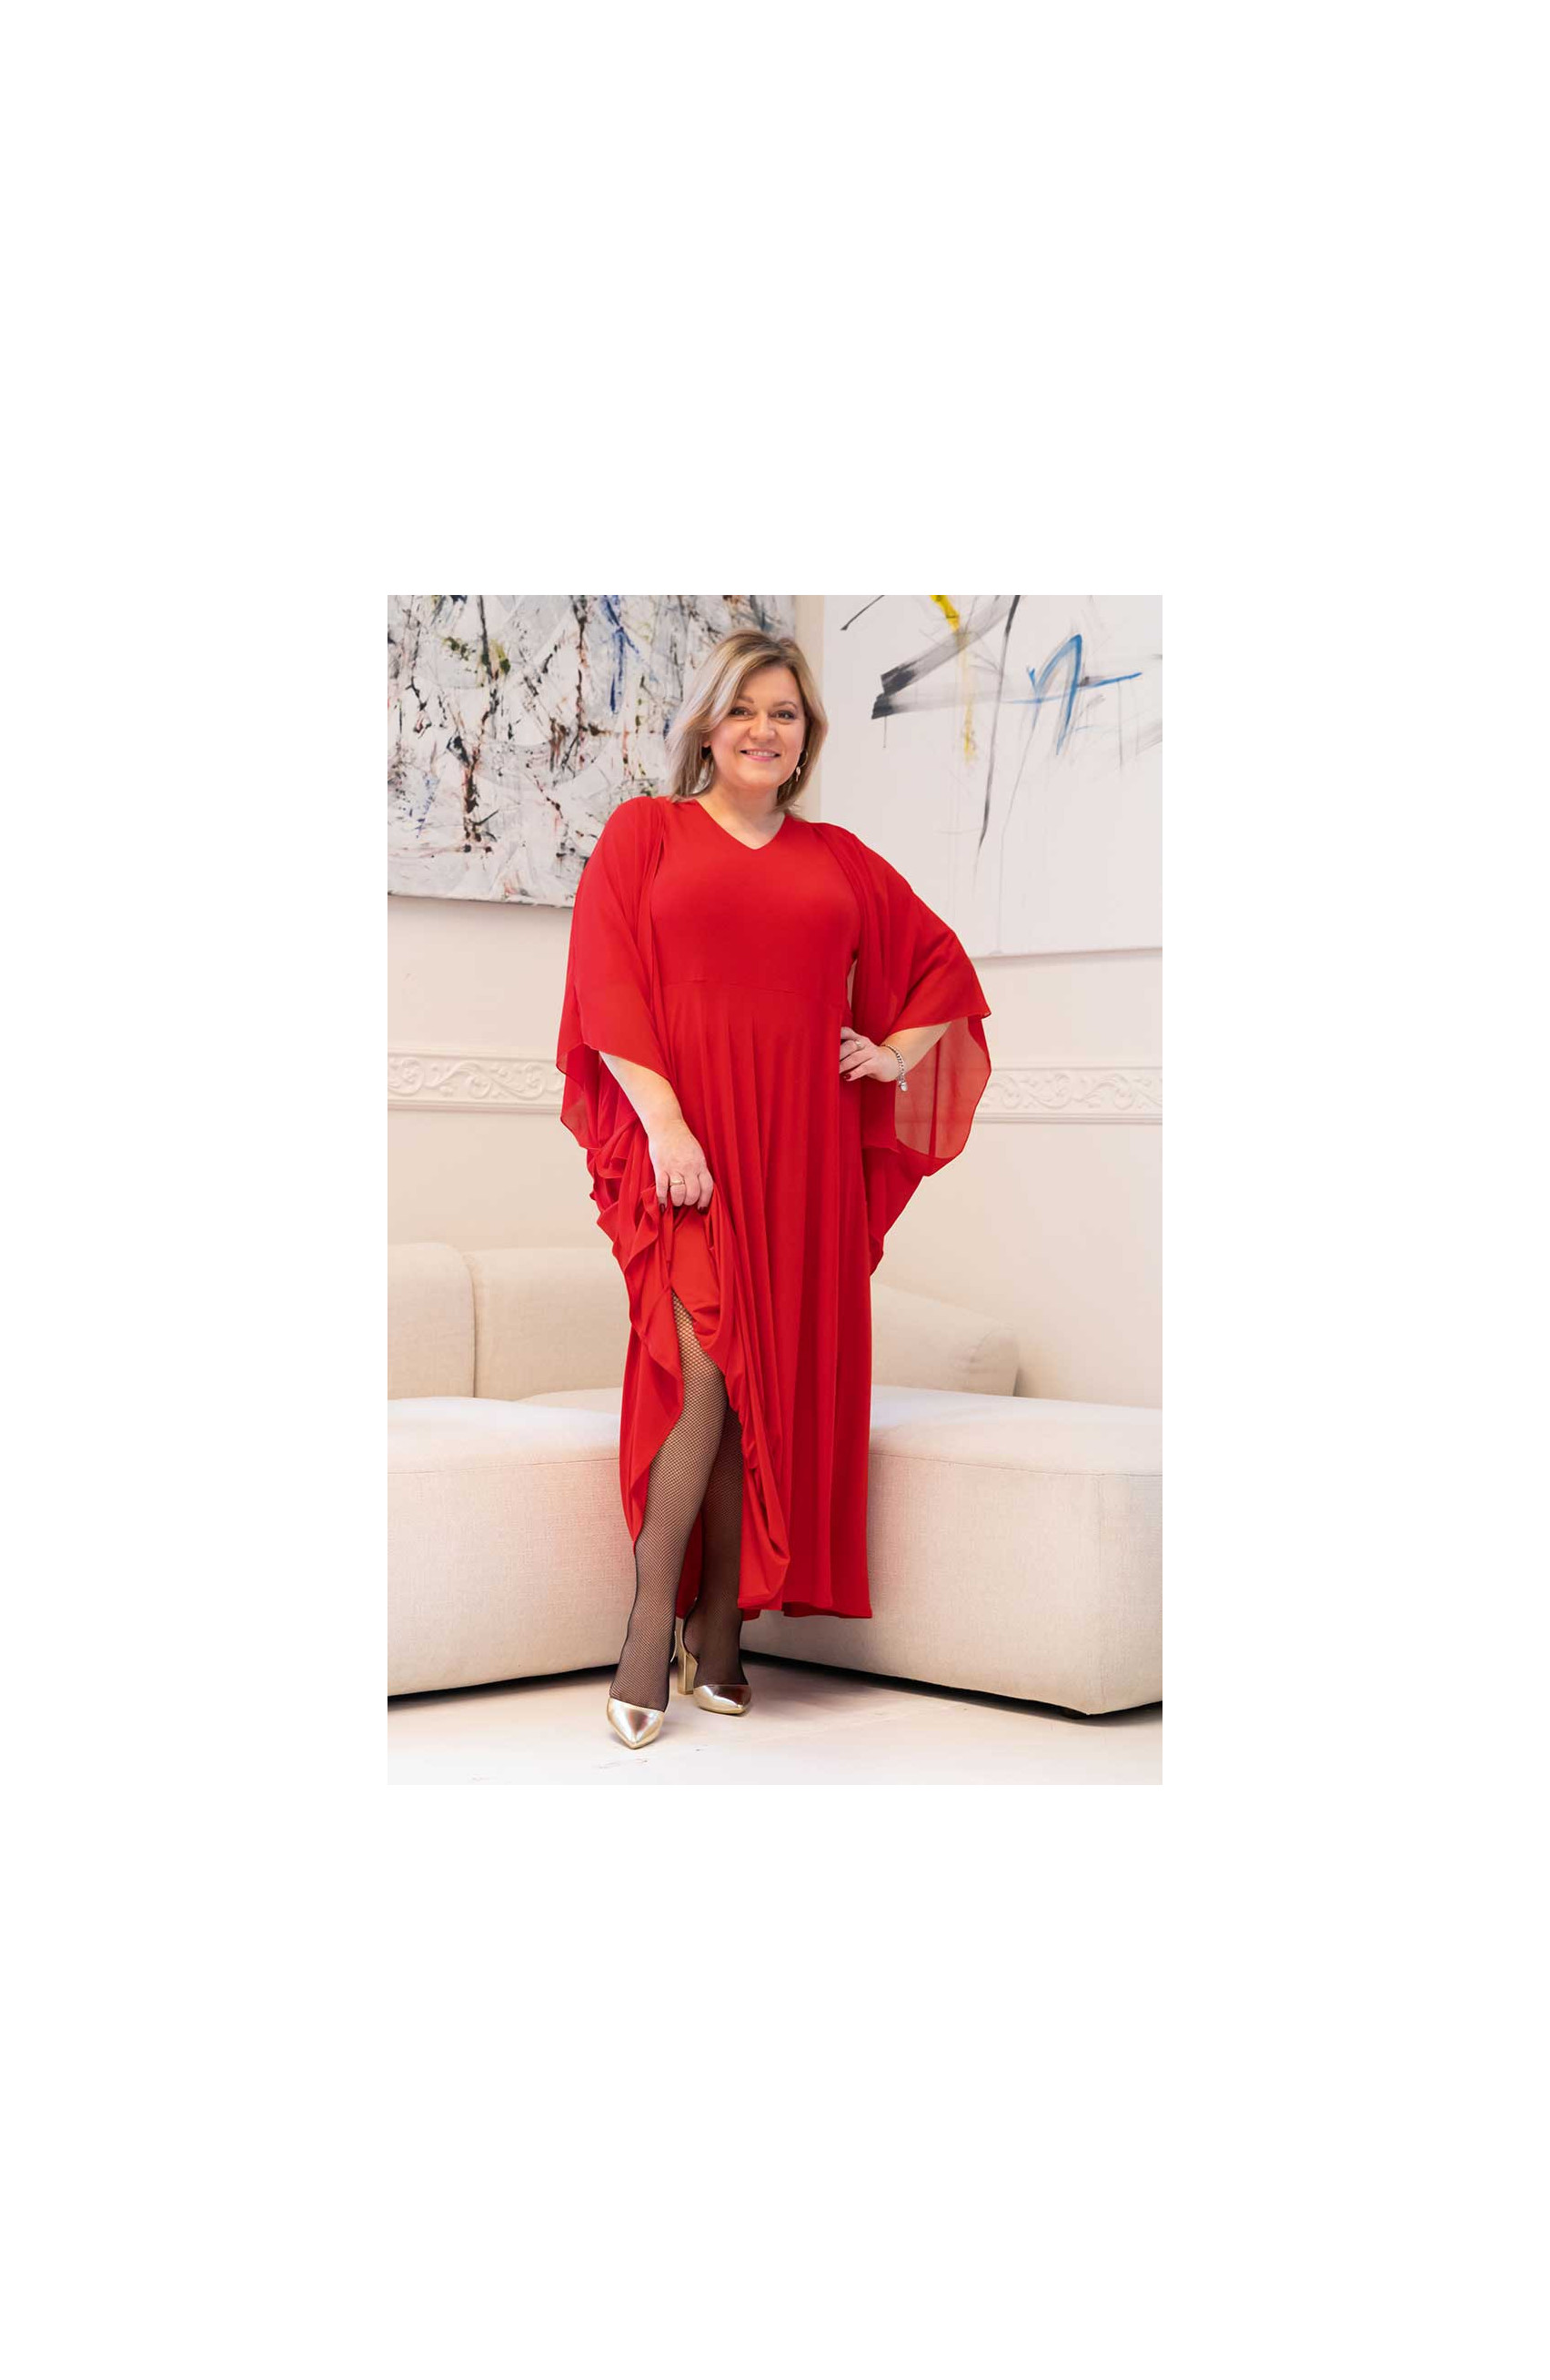 Rochie lungă roșie evazată maxi cu mantilă șifon și decolteu în V Dimensiuni mari la modă